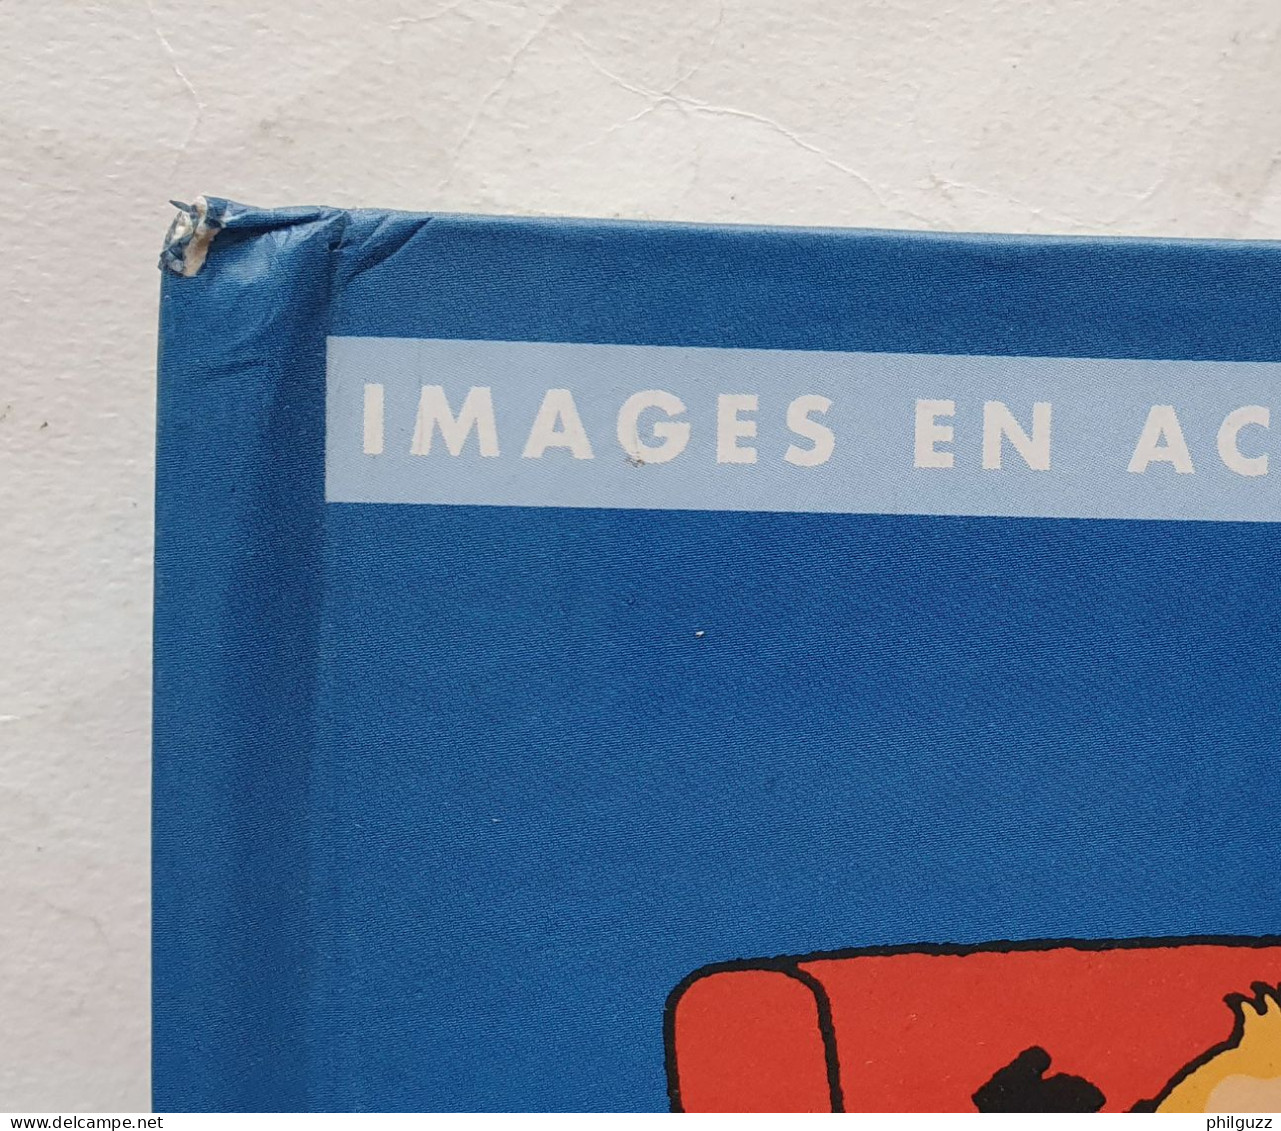 Images En Action LIVRE ALBUM TINTIN MOULINSART 1999 JE DECOUVRE LES LETTRES - Hergé